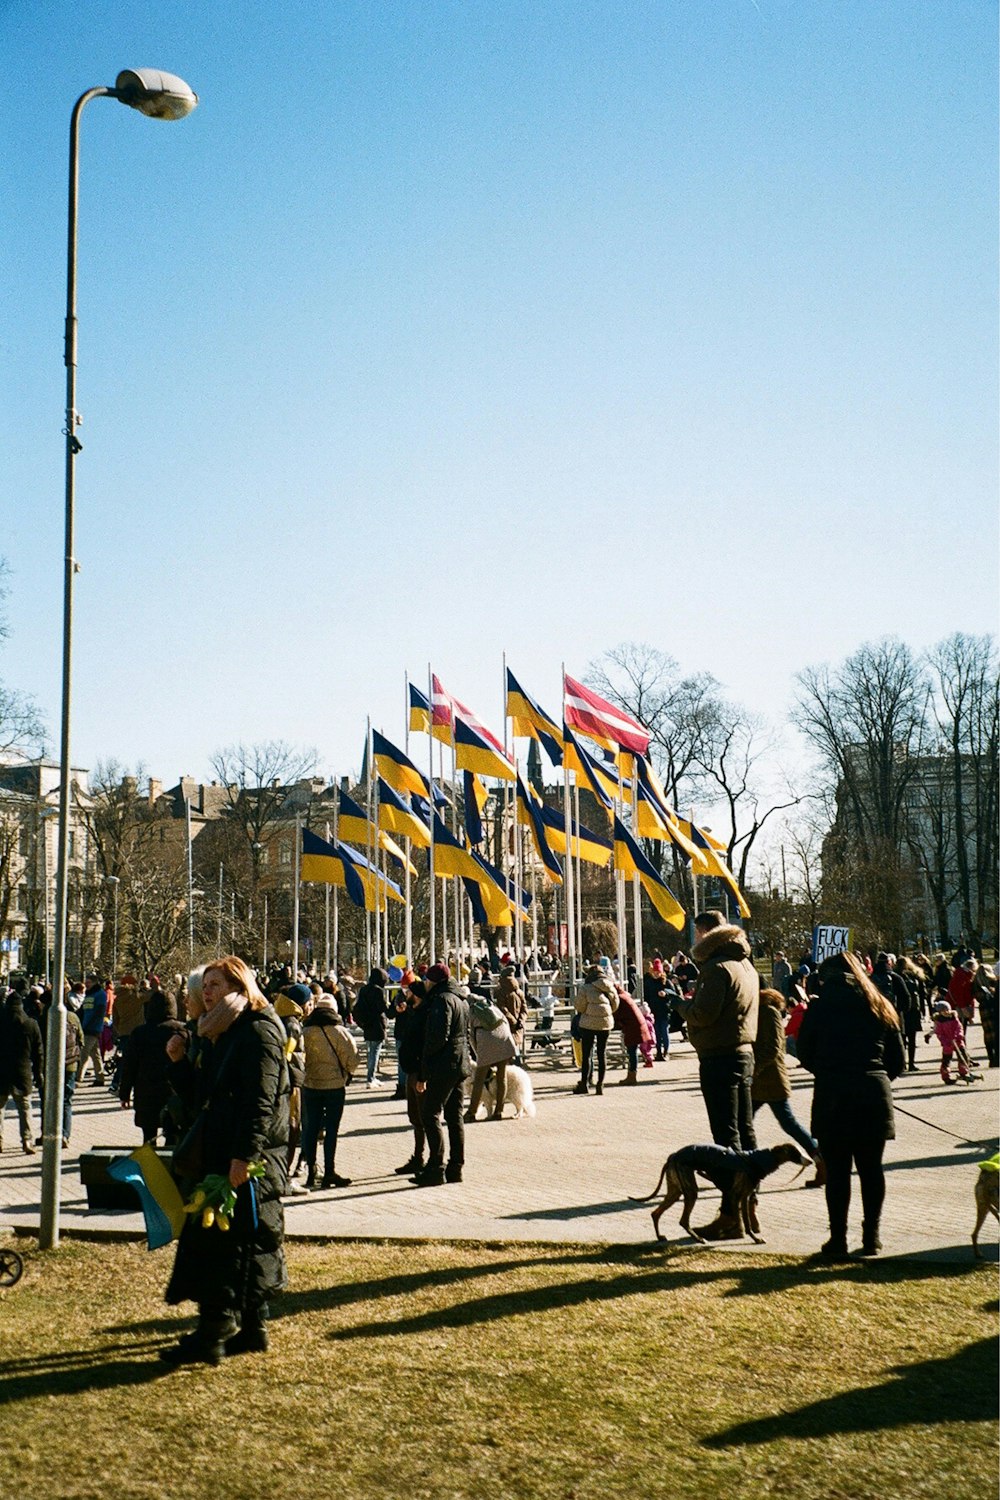 Una multitud de personas caminando por una calle junto a banderas